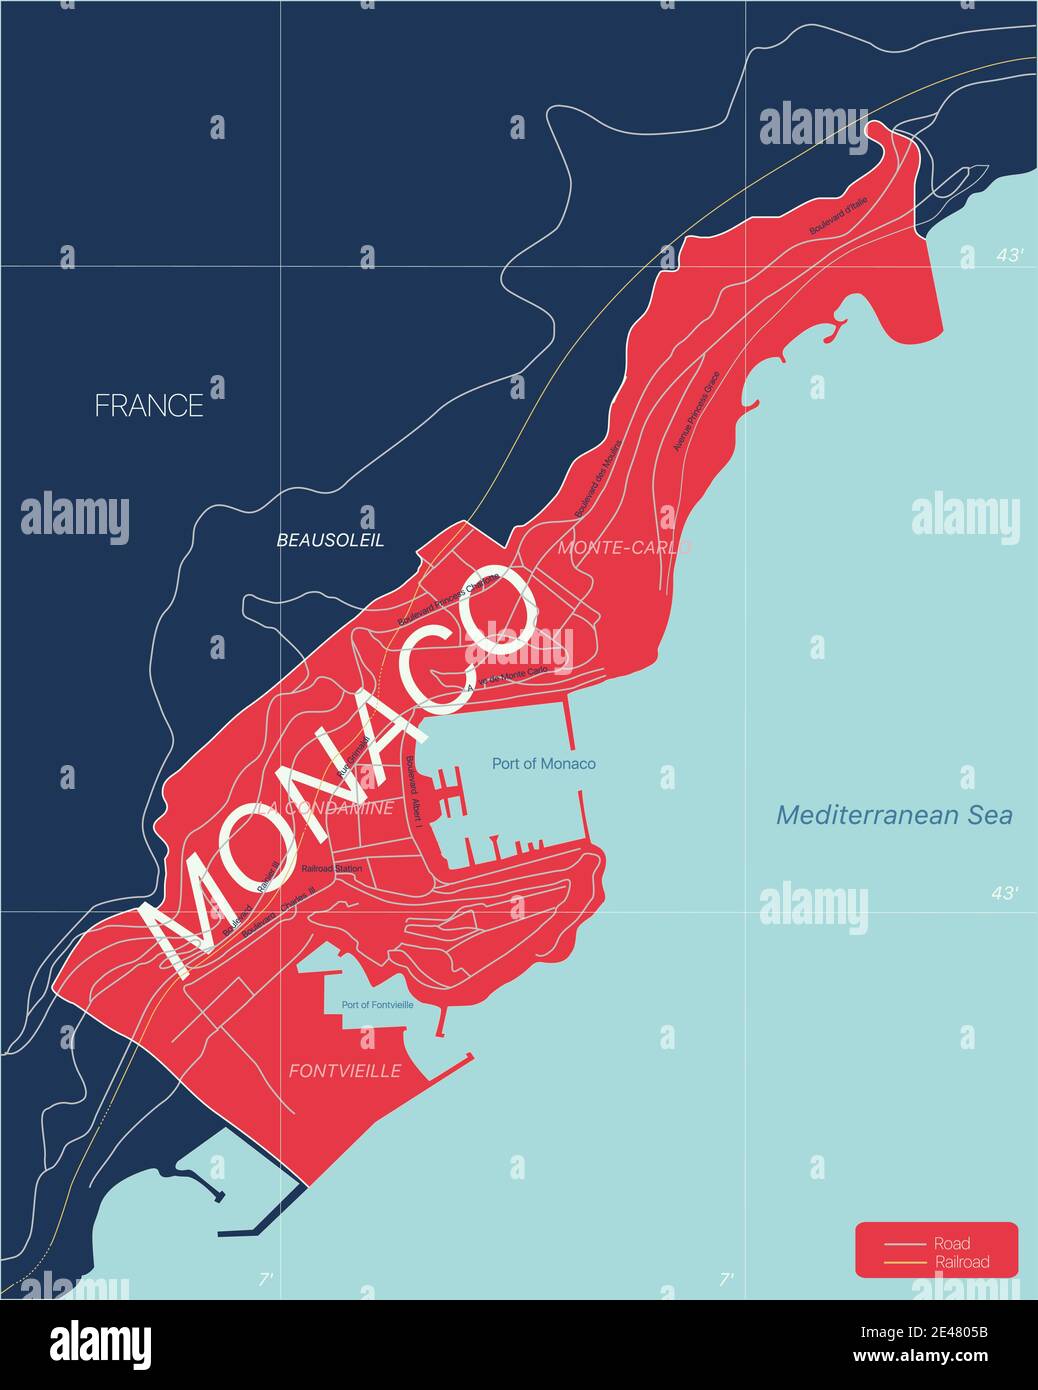 Monaco Land detaillierte editierbare Karte mit Regionen Städte und Städte, Straßen und Eisenbahnen, geografische Standorte. Vector EPS-10-Datei Stock Vektor